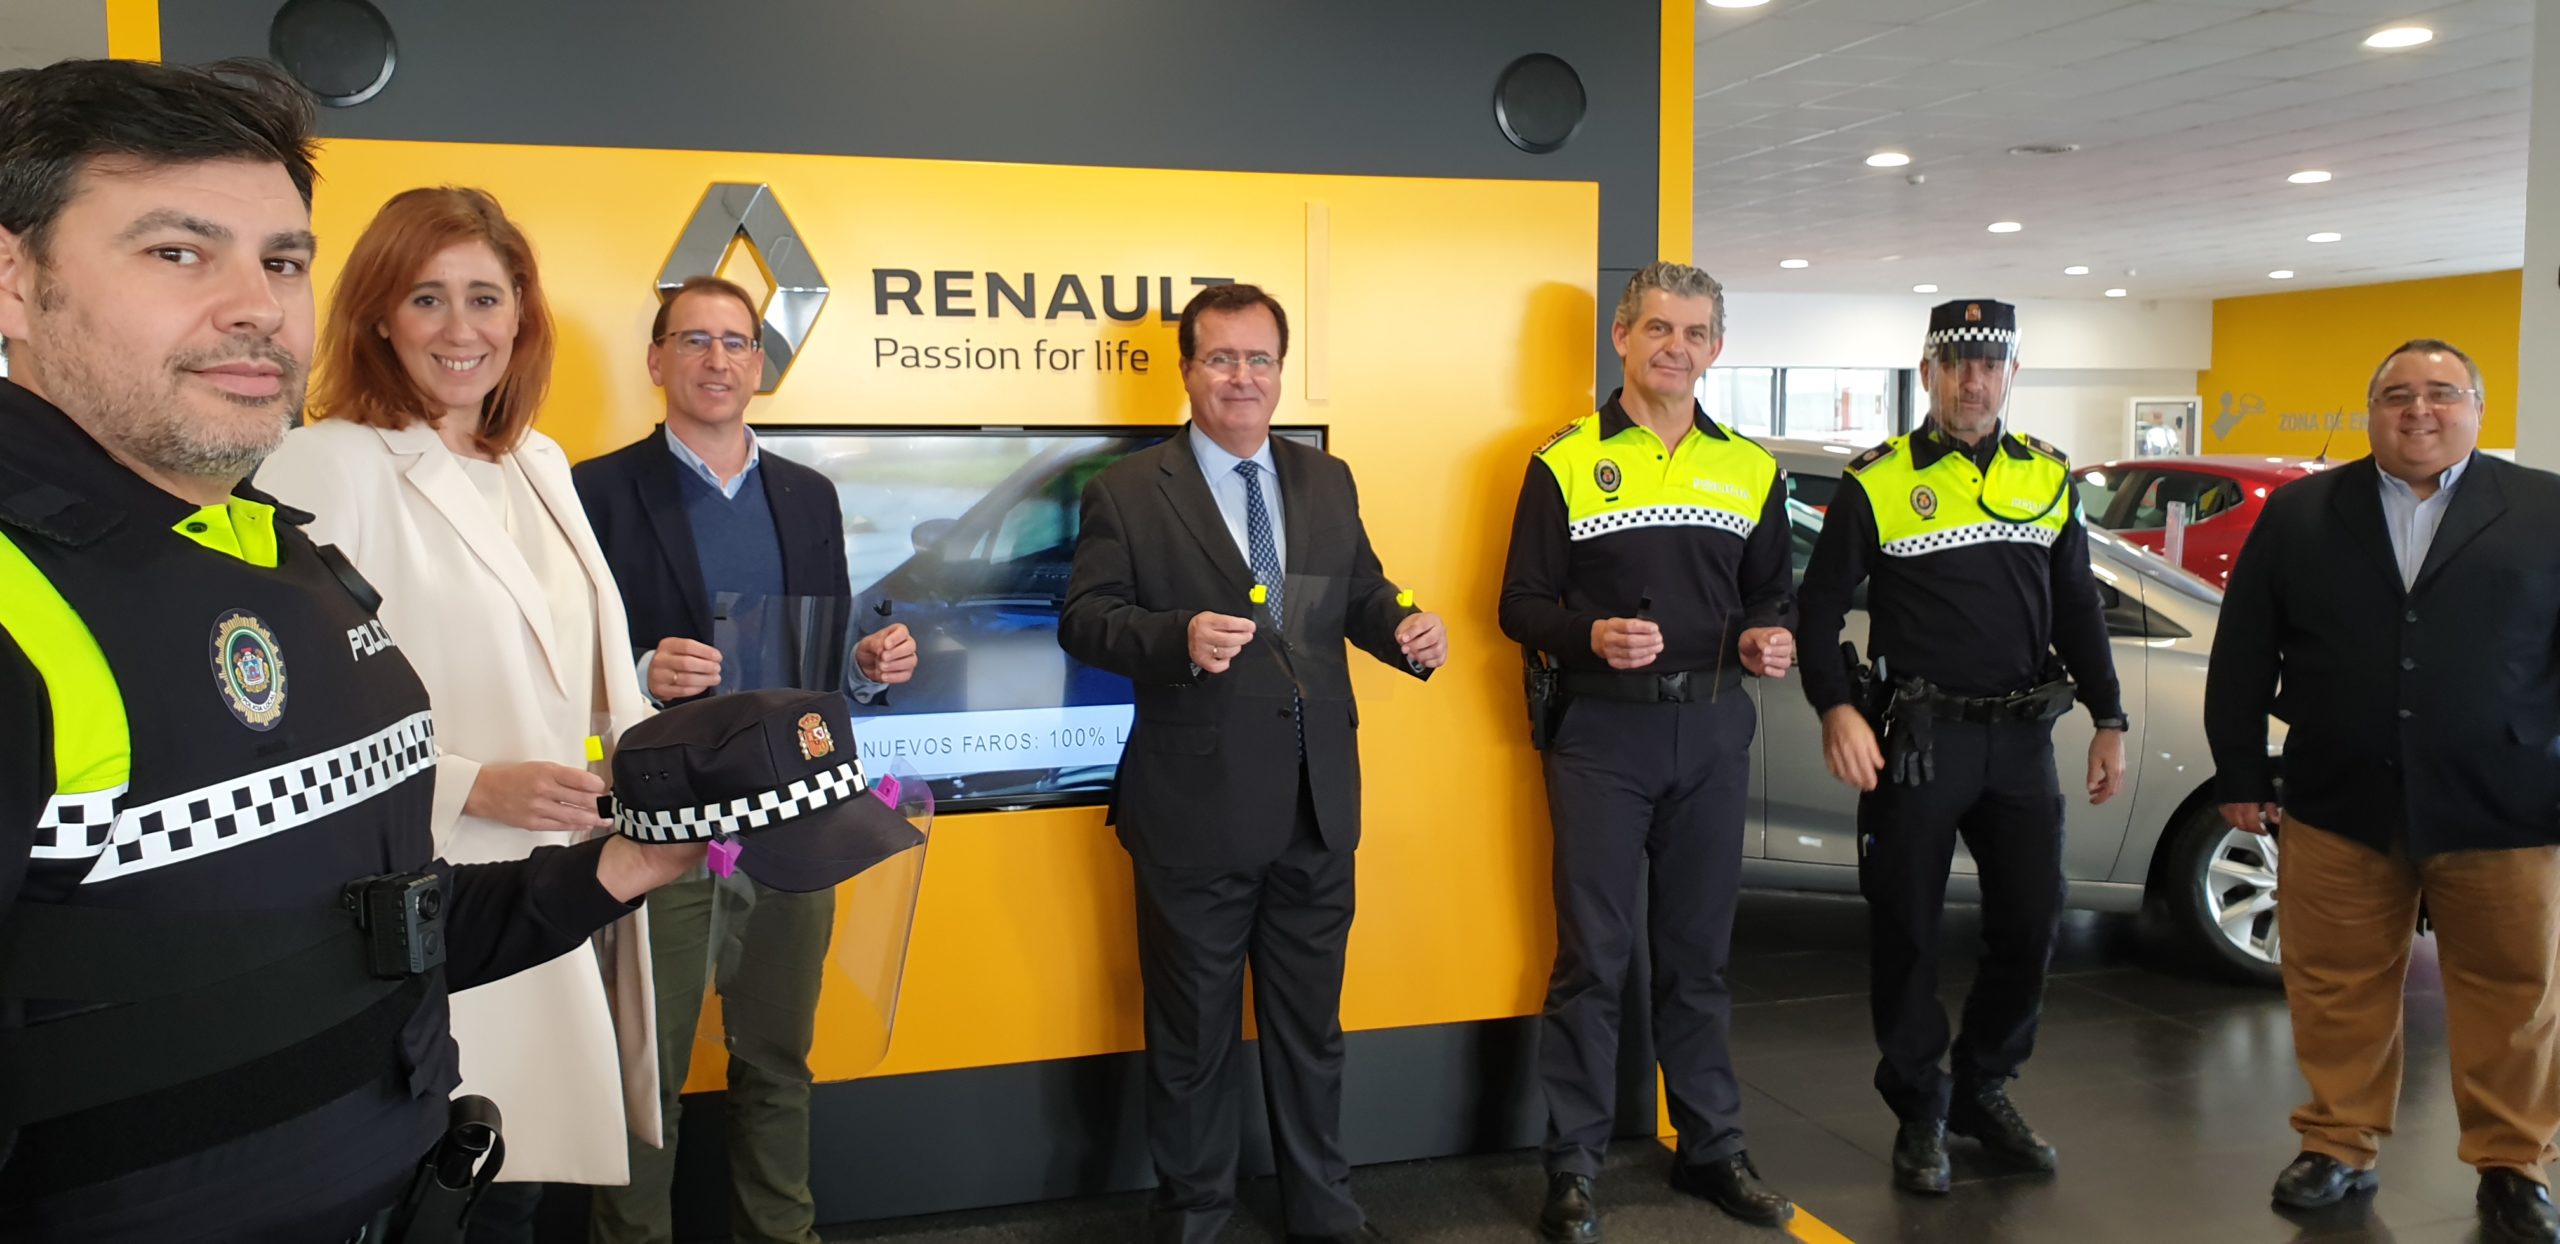 Renault al rescate equipa a la policía de una veintena de localidades